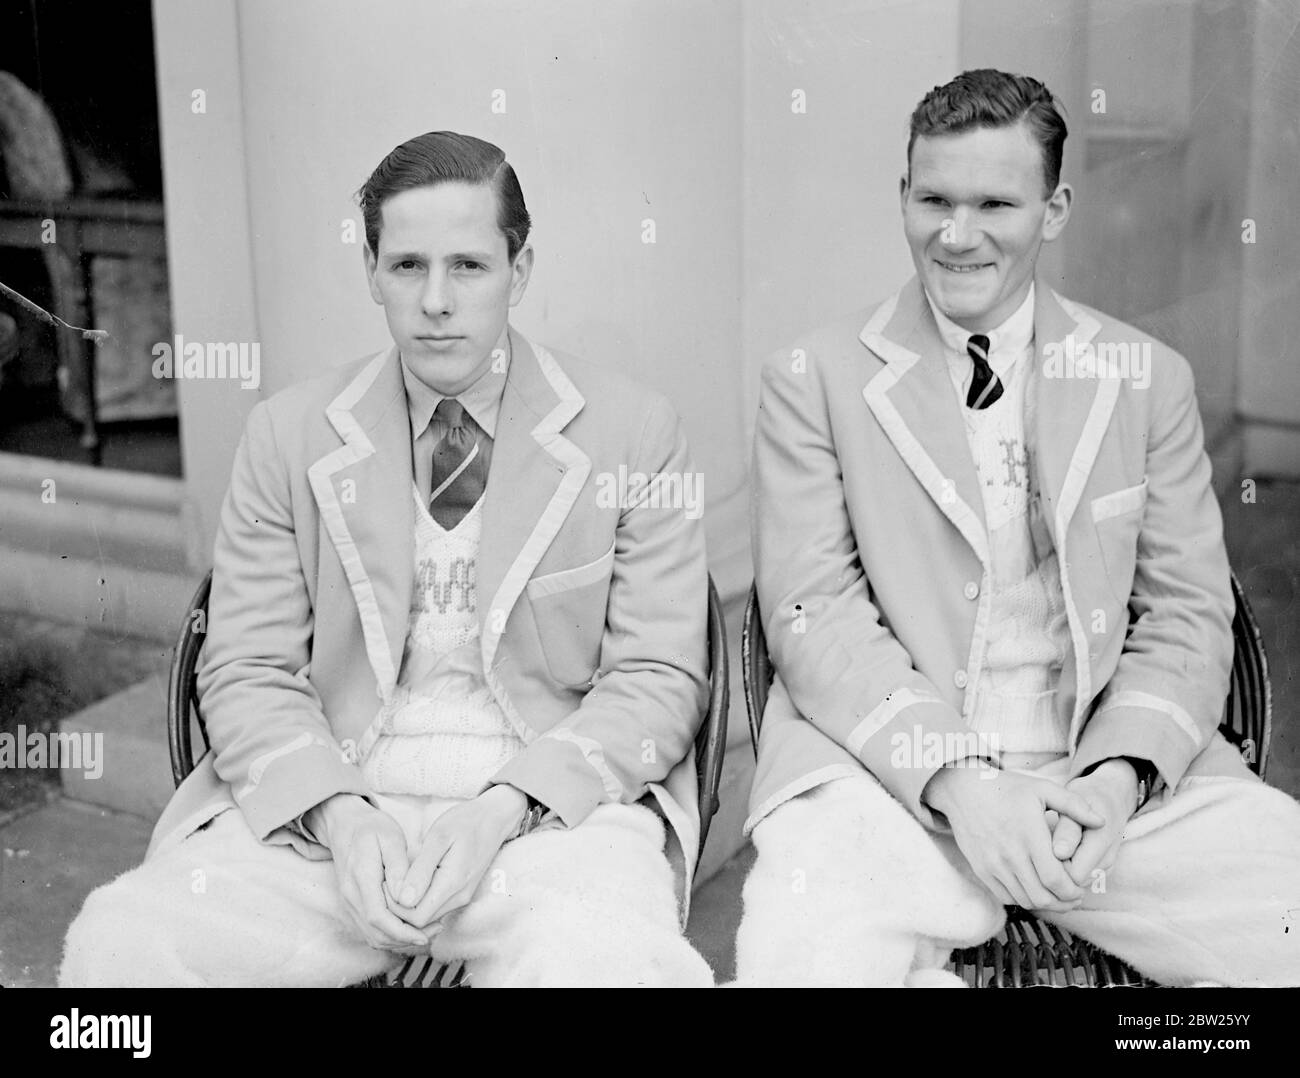 A M Turner (à gauche) et G Keppel (à droite) de l'équipage du Cambridge Boat. 1938 Banque D'Images